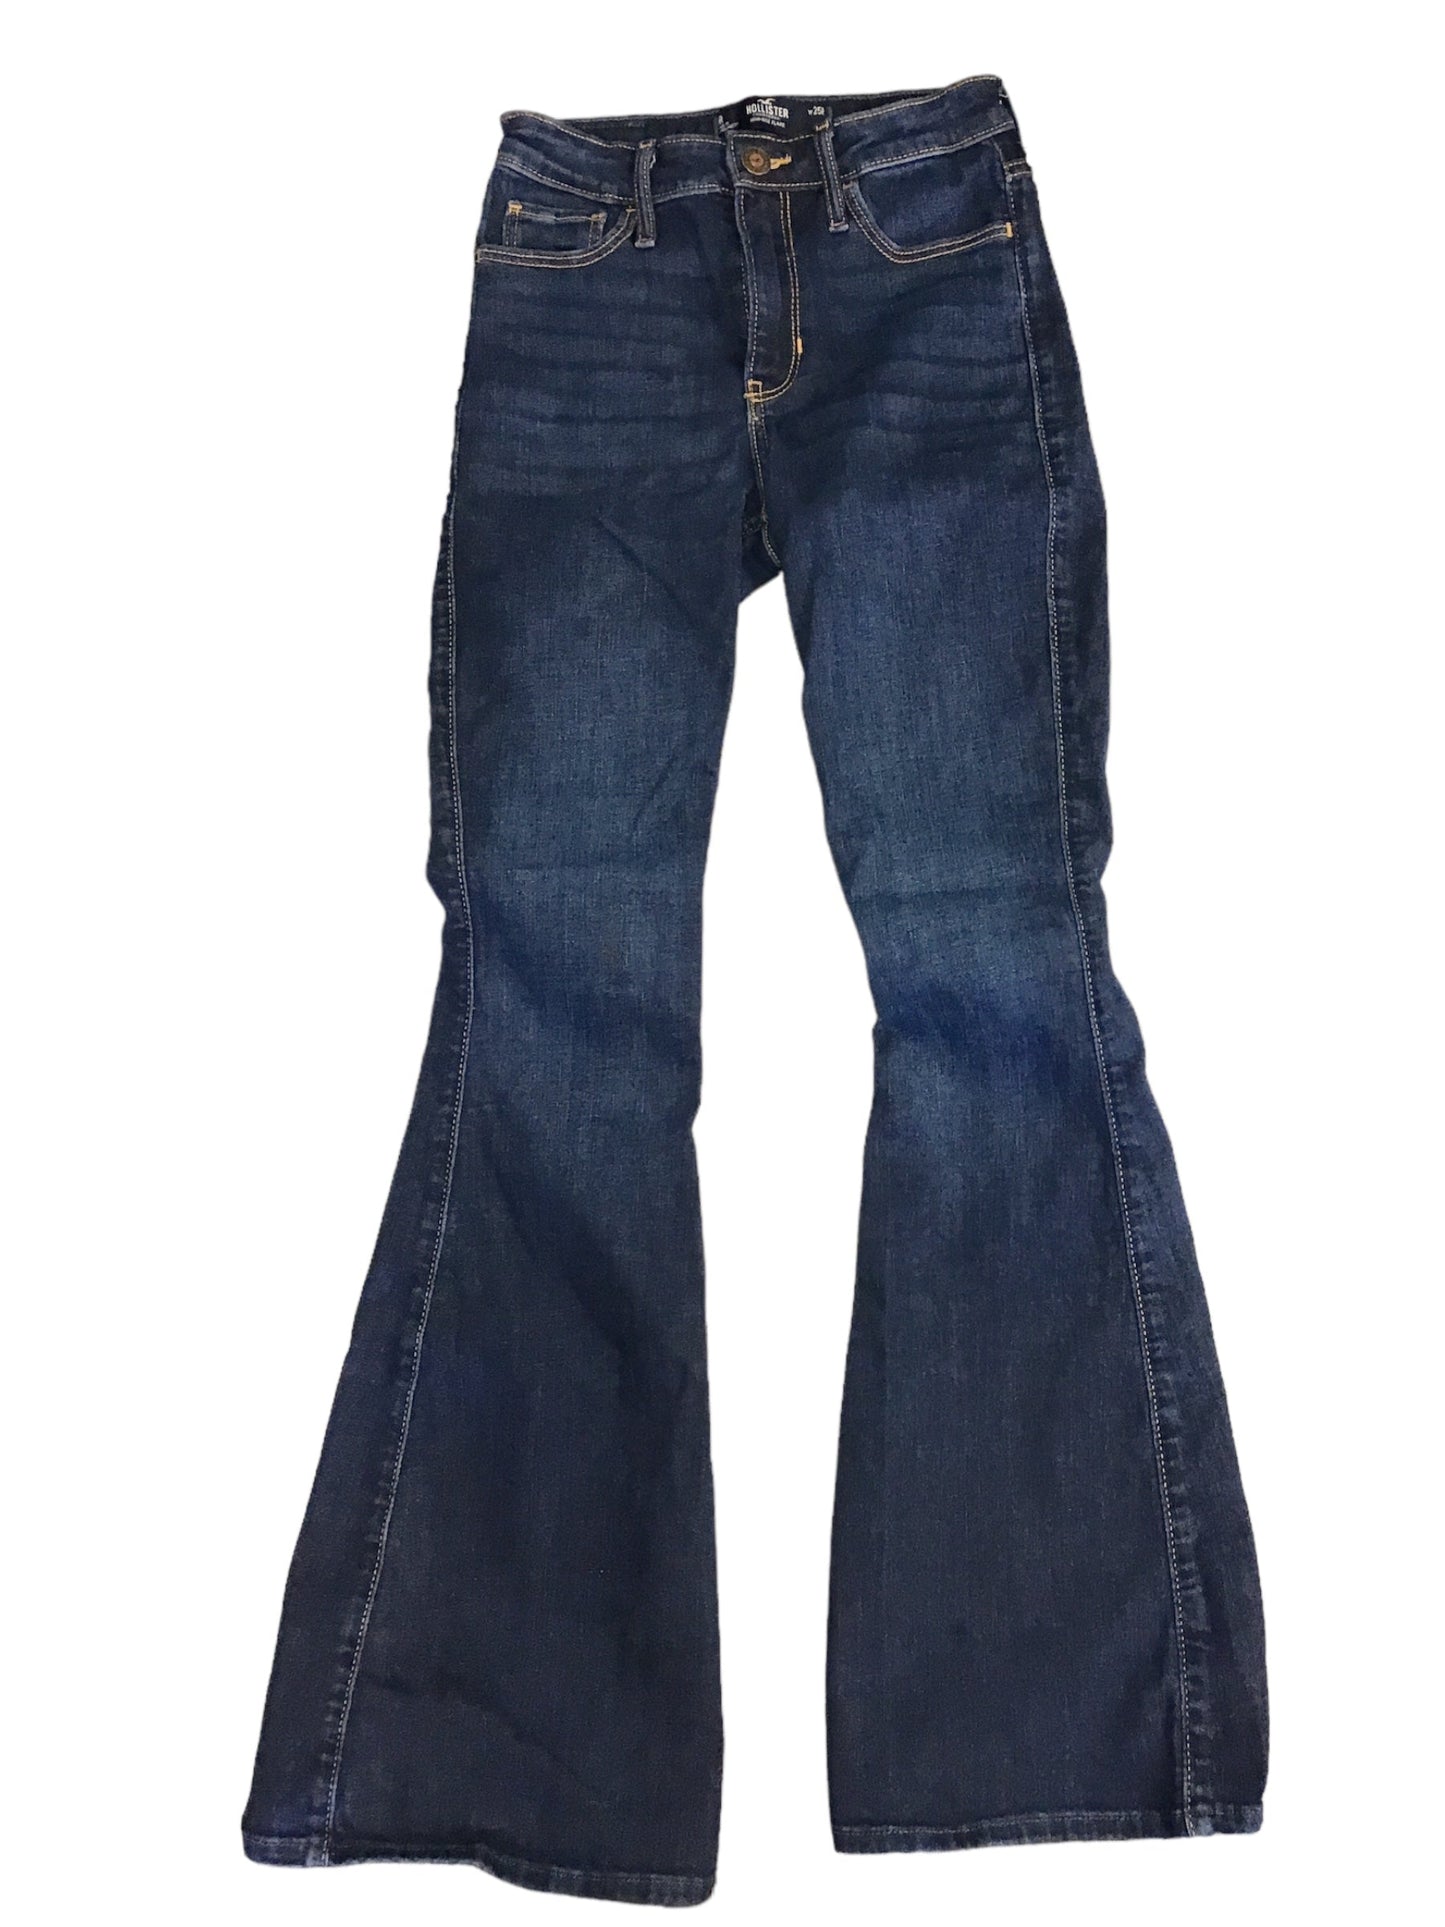 Blue Denim Jeans Flared Hollister, Size 0